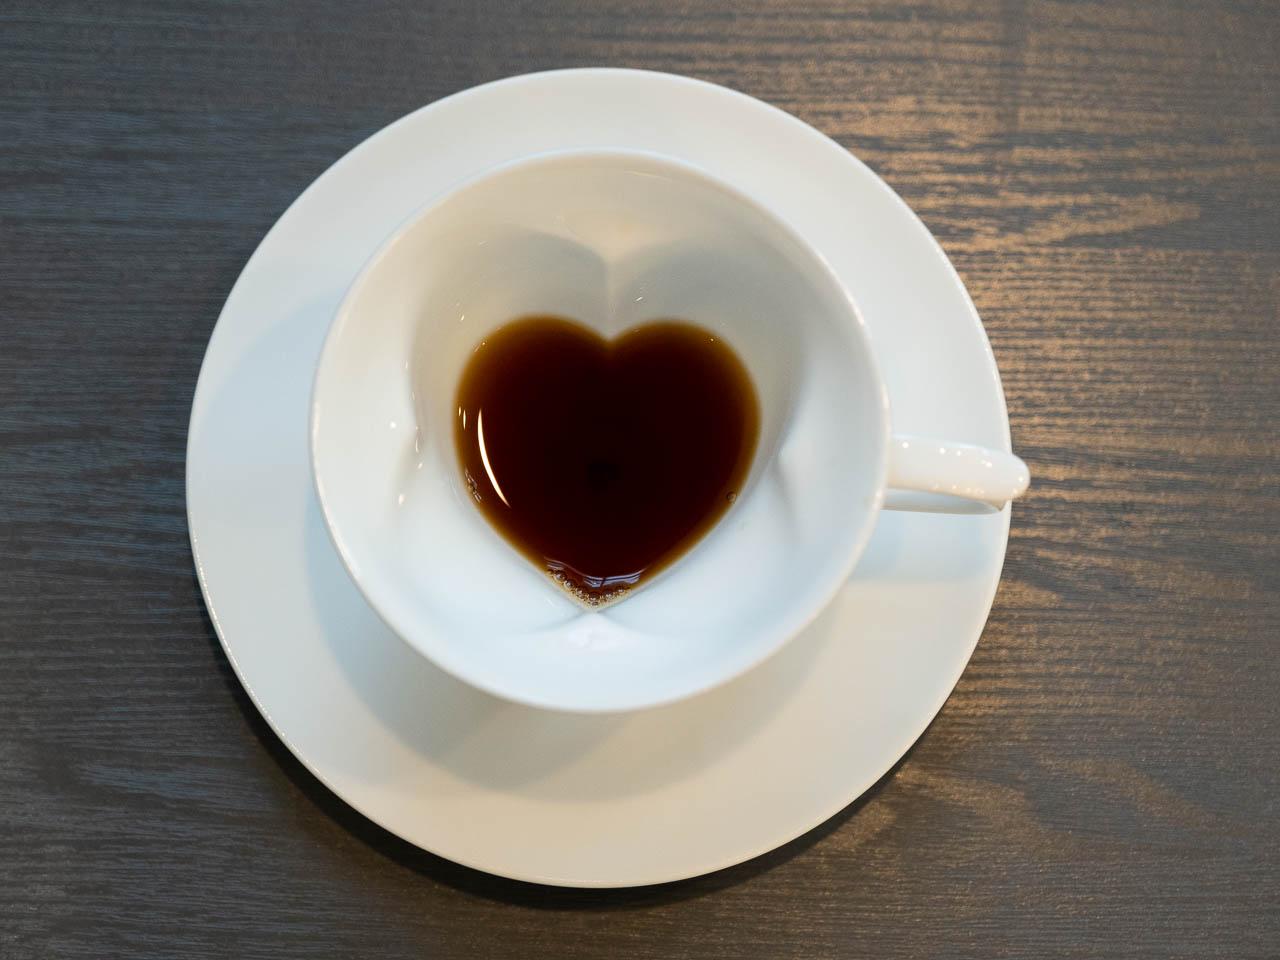 コーヒーを飲み進めると四葉のクローバー形からハート形に変化するカップが可愛い 編集部ブログ 記事詳細 Infoseekニュース